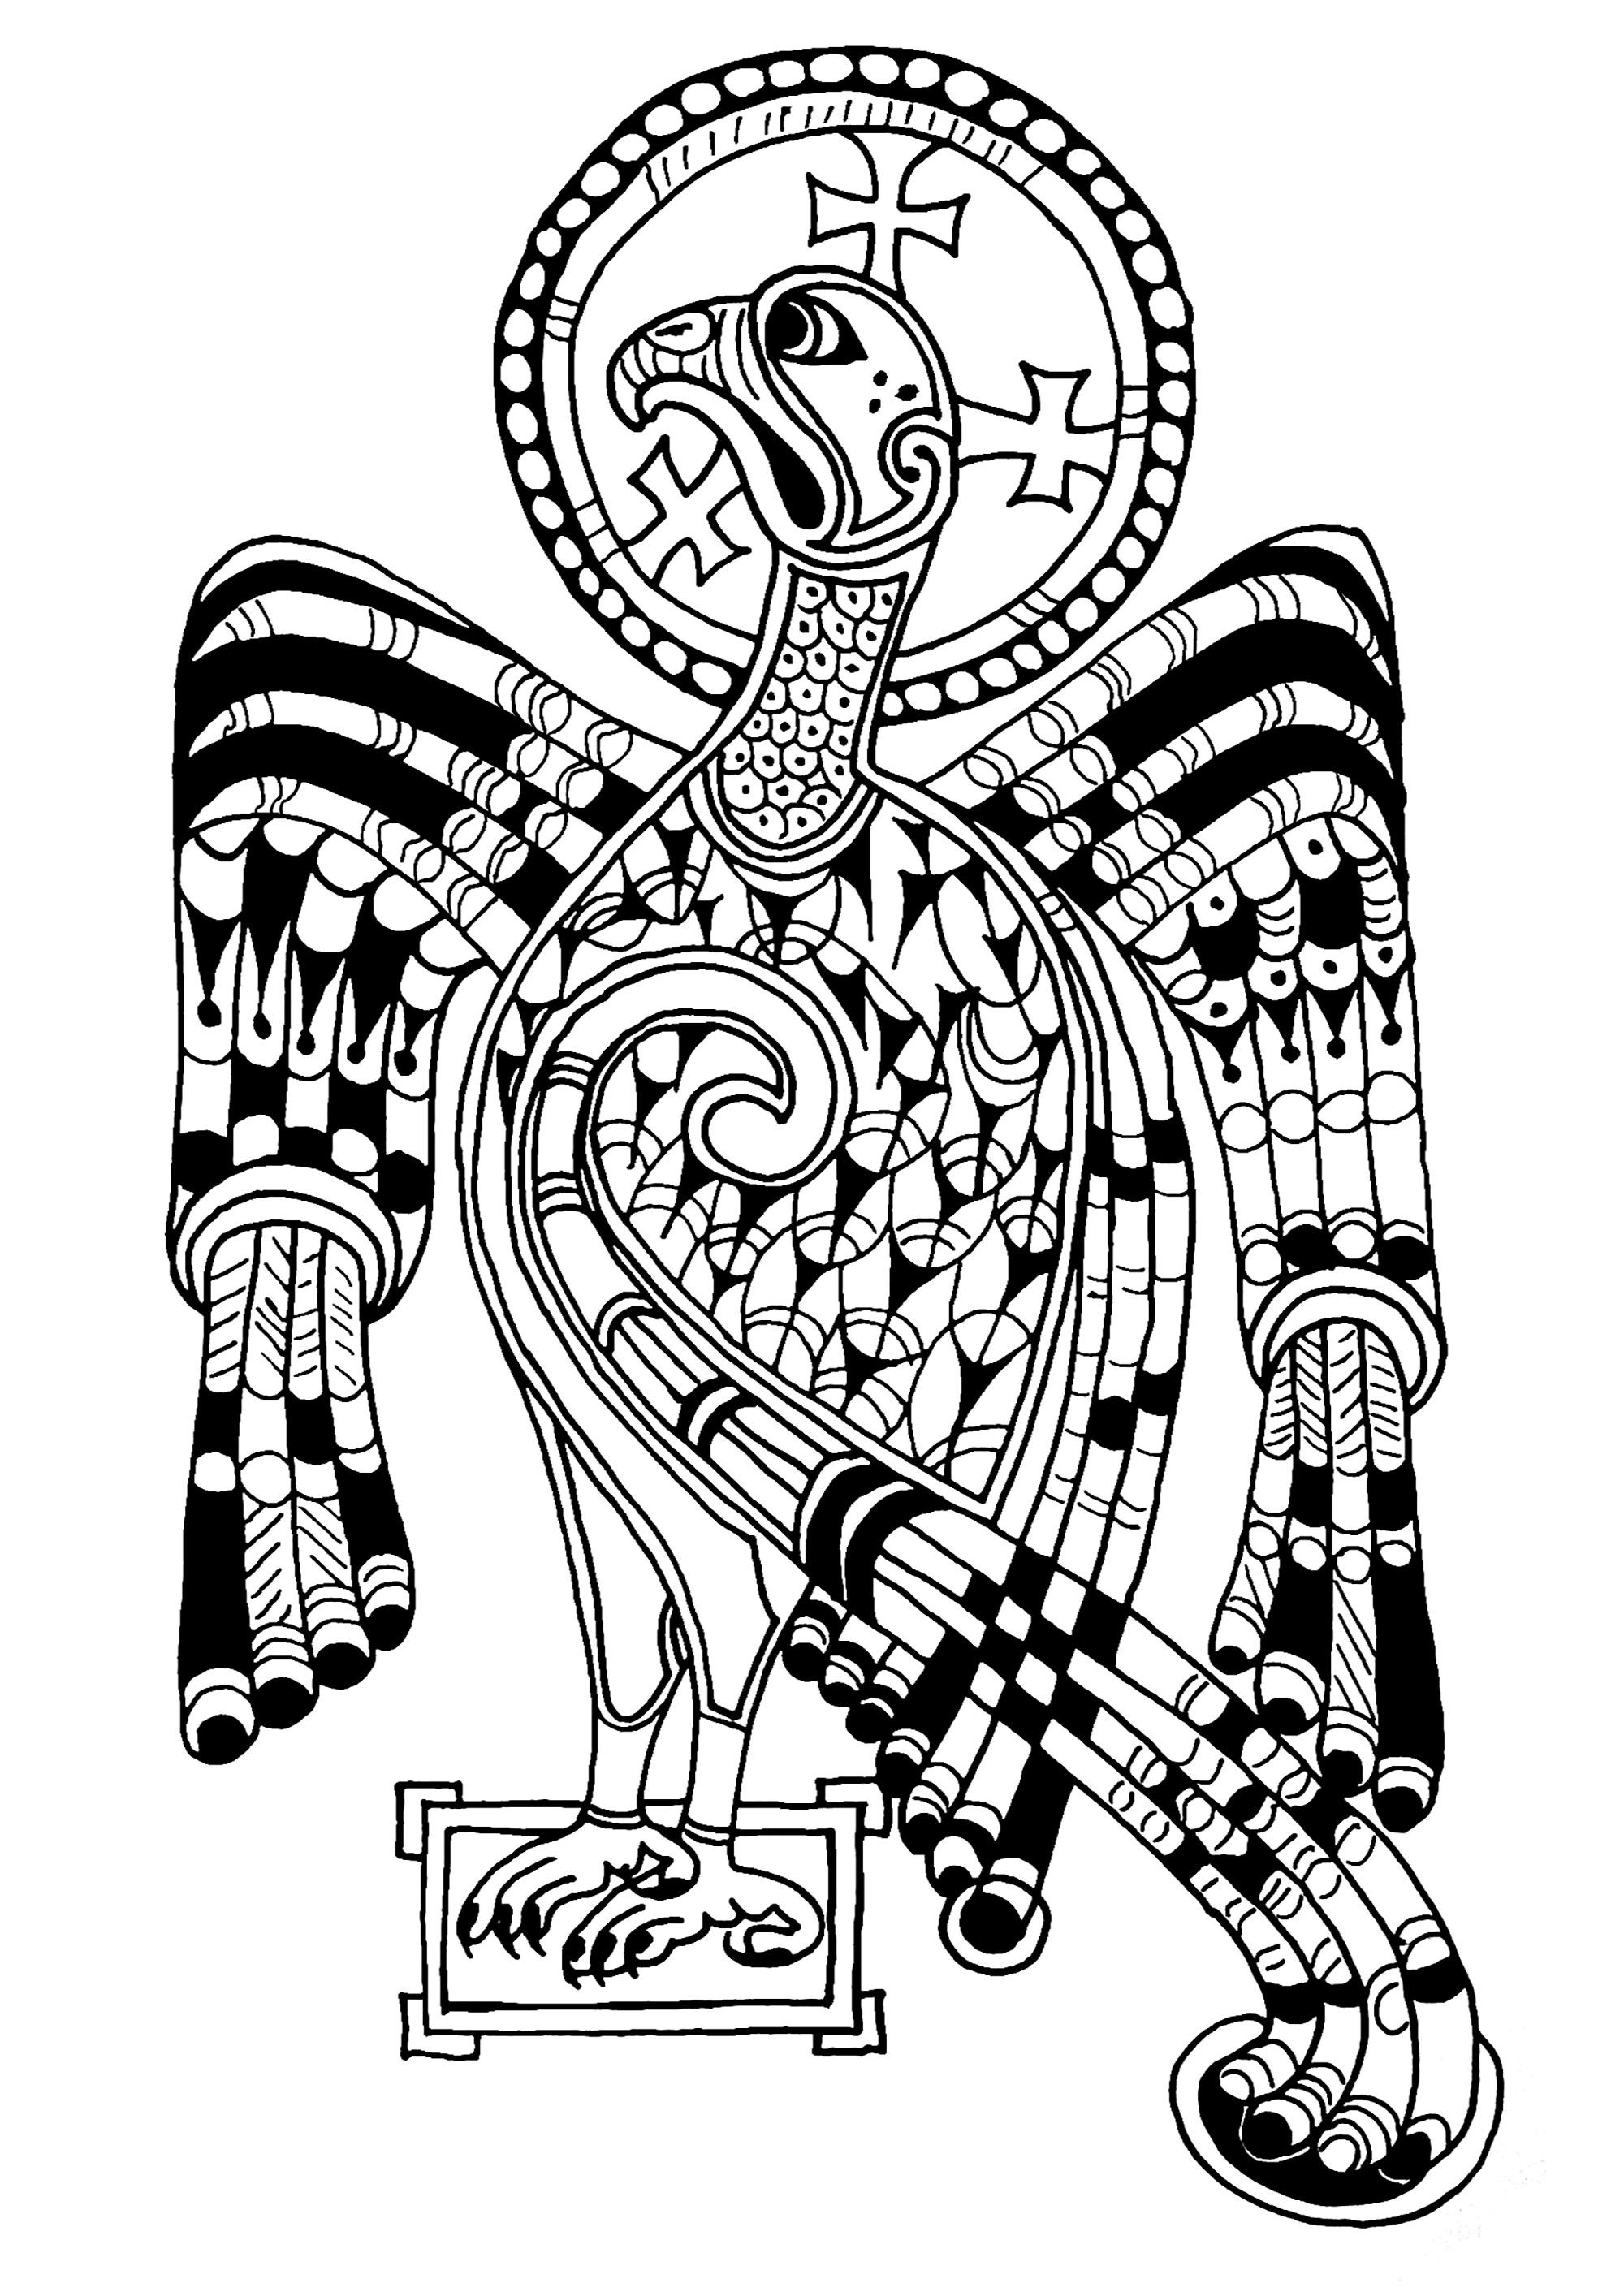 Aigle représenté dans le Book of Kells, symbolisant Saint-Jean et l'ascension de Jésus. Le « Book of Kells » est un manuscrit médiéval datant du Moyen-Age (IXe siècle), dont il reste 680 pages. Elles regroupent les quatre évangiles en latin du Nouveau Testament. Il est exposé à la Trinity College Library, à Dublin.